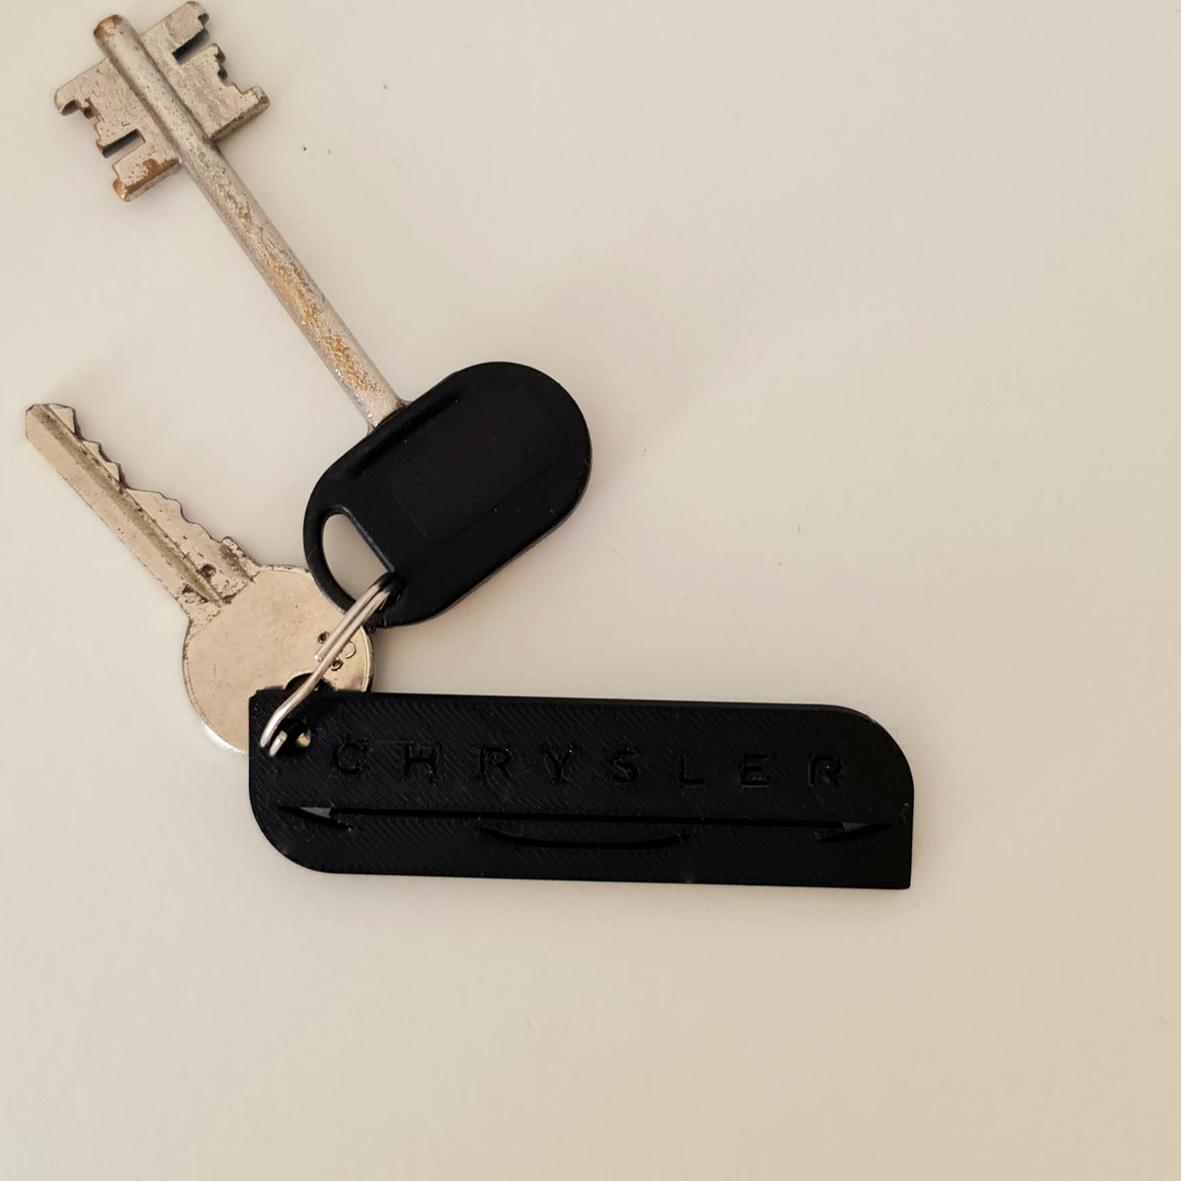 Keychain: Chrysler I 3d model